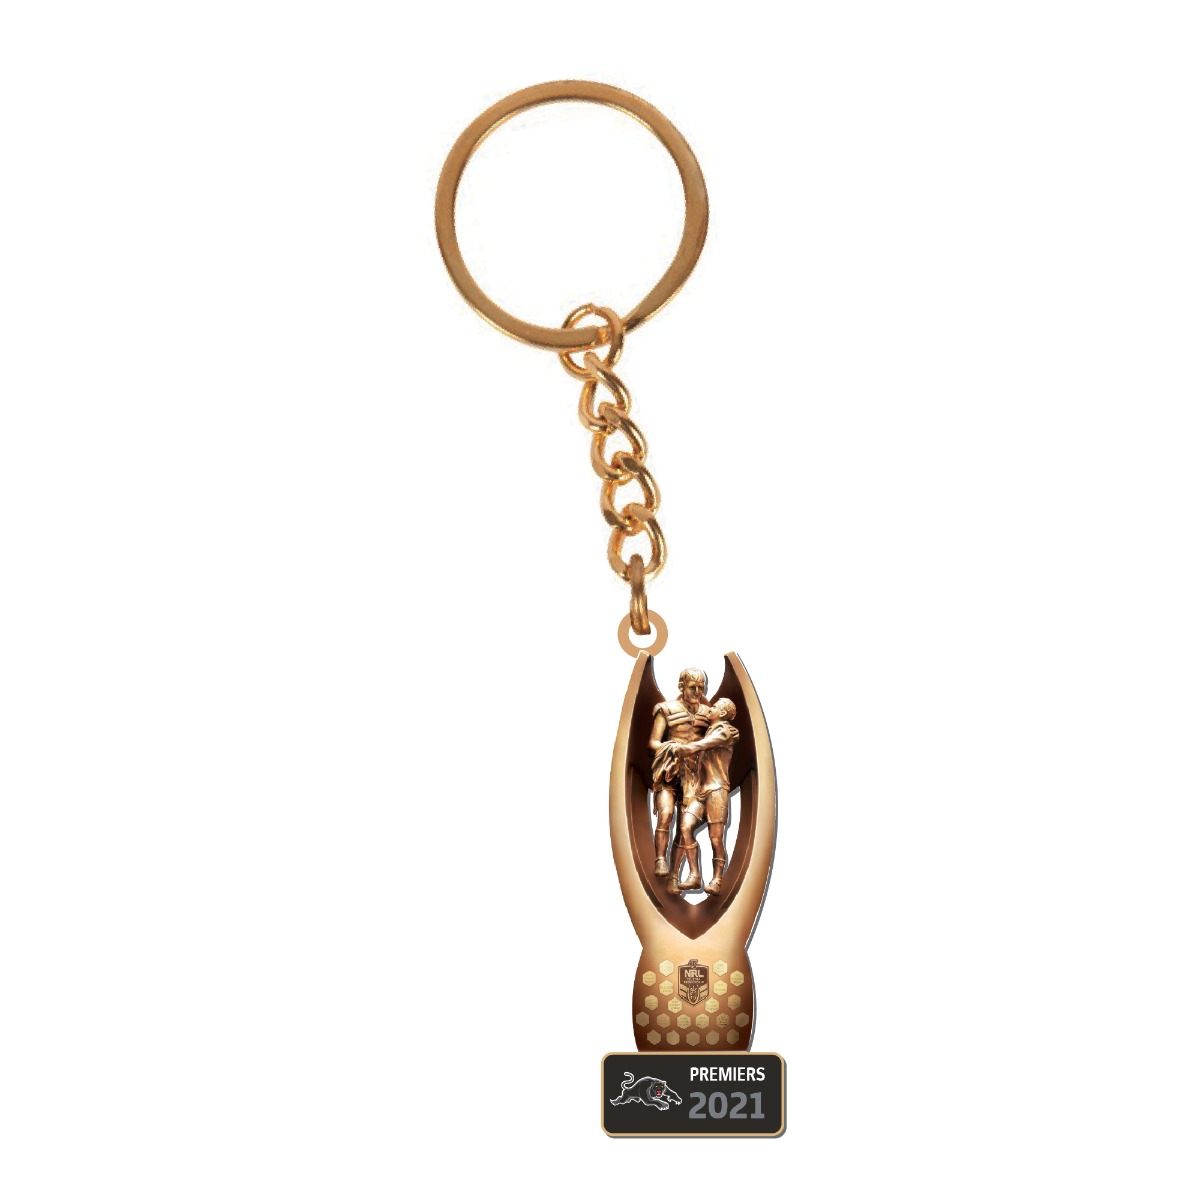 PRE ORDER - Penrith Panthers 2021 NRL Premiers Trophy Metal Keyring Key Ring